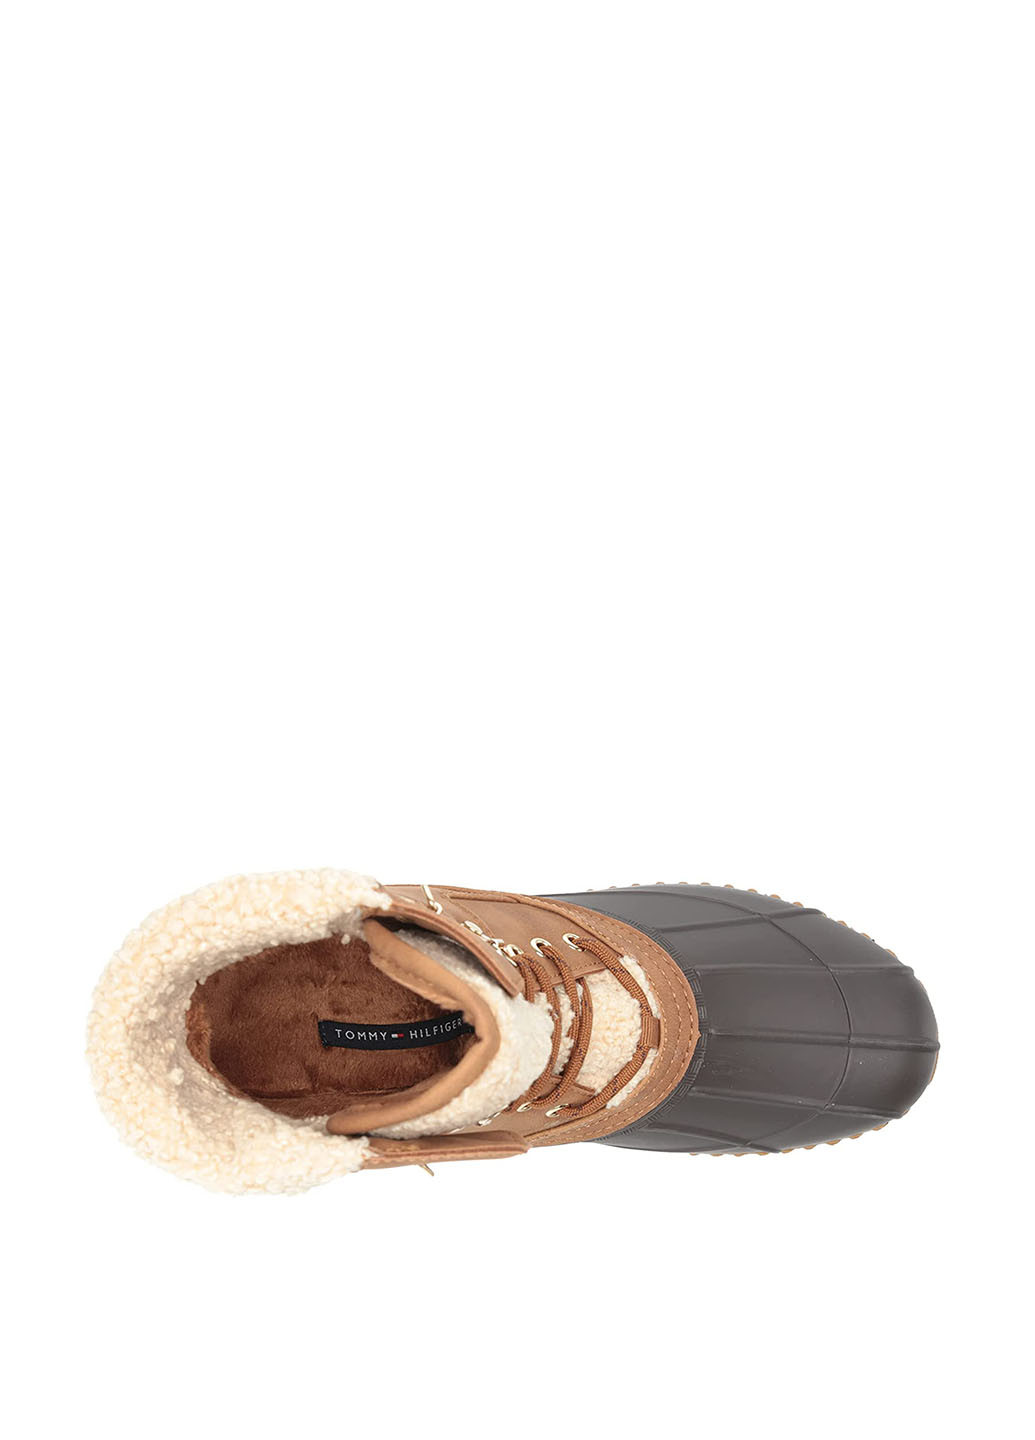 Осенние ботинки Tommy Hilfiger с мехом резиновые, тканевые